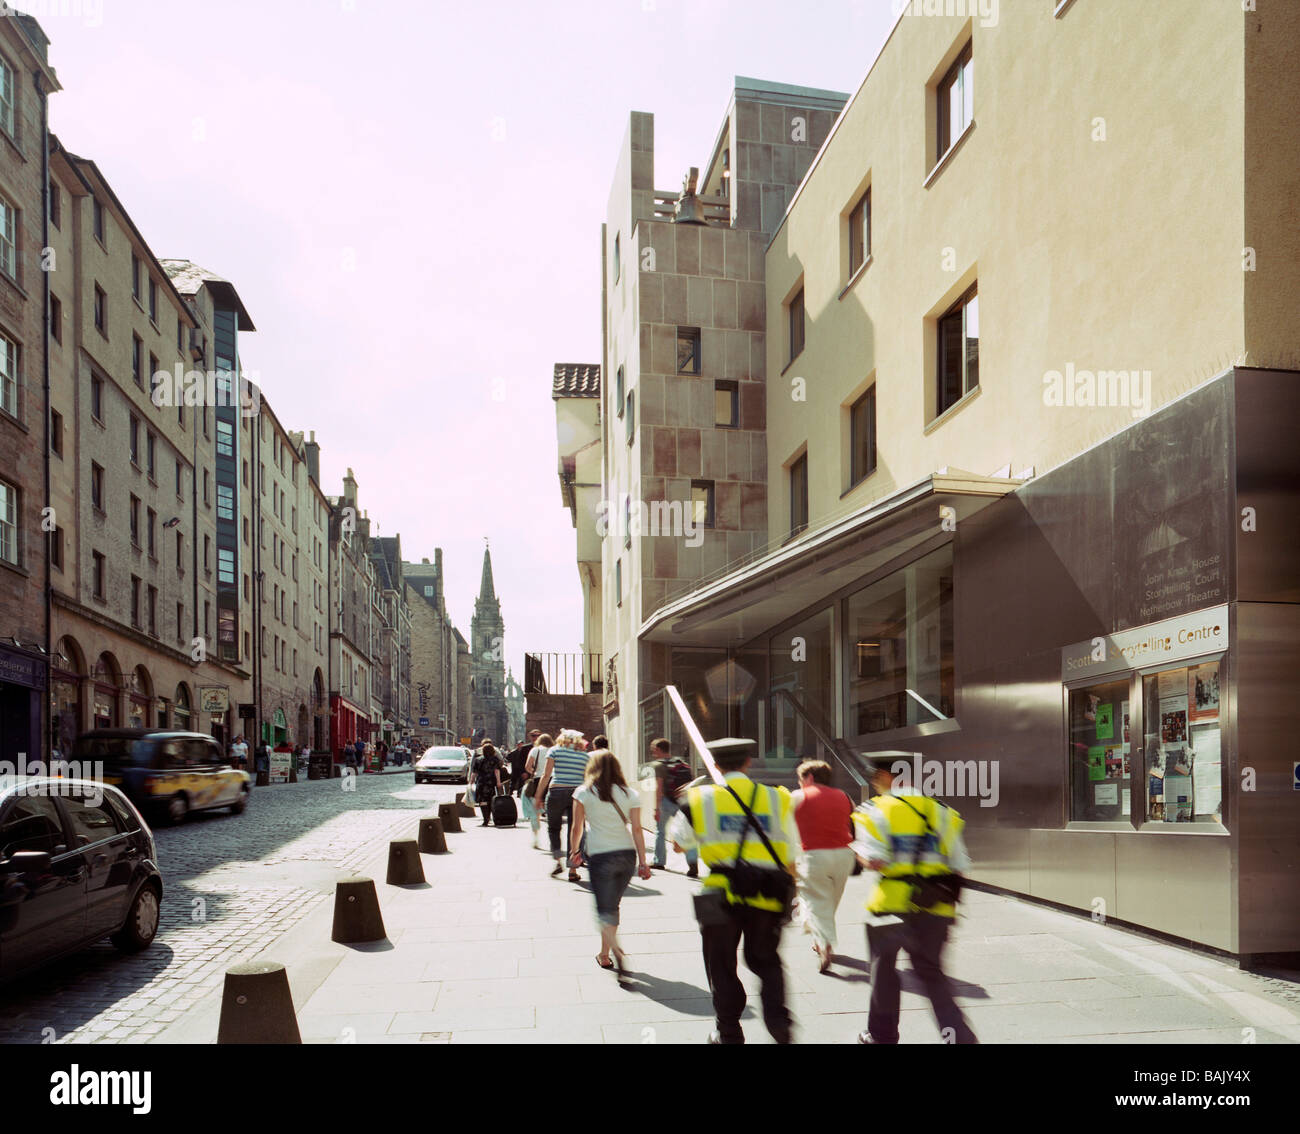 SCOTTISH STORYTELLING CENTRO, Malcolm Fraser Architects, Edinburgh, Regno Unito Foto Stock